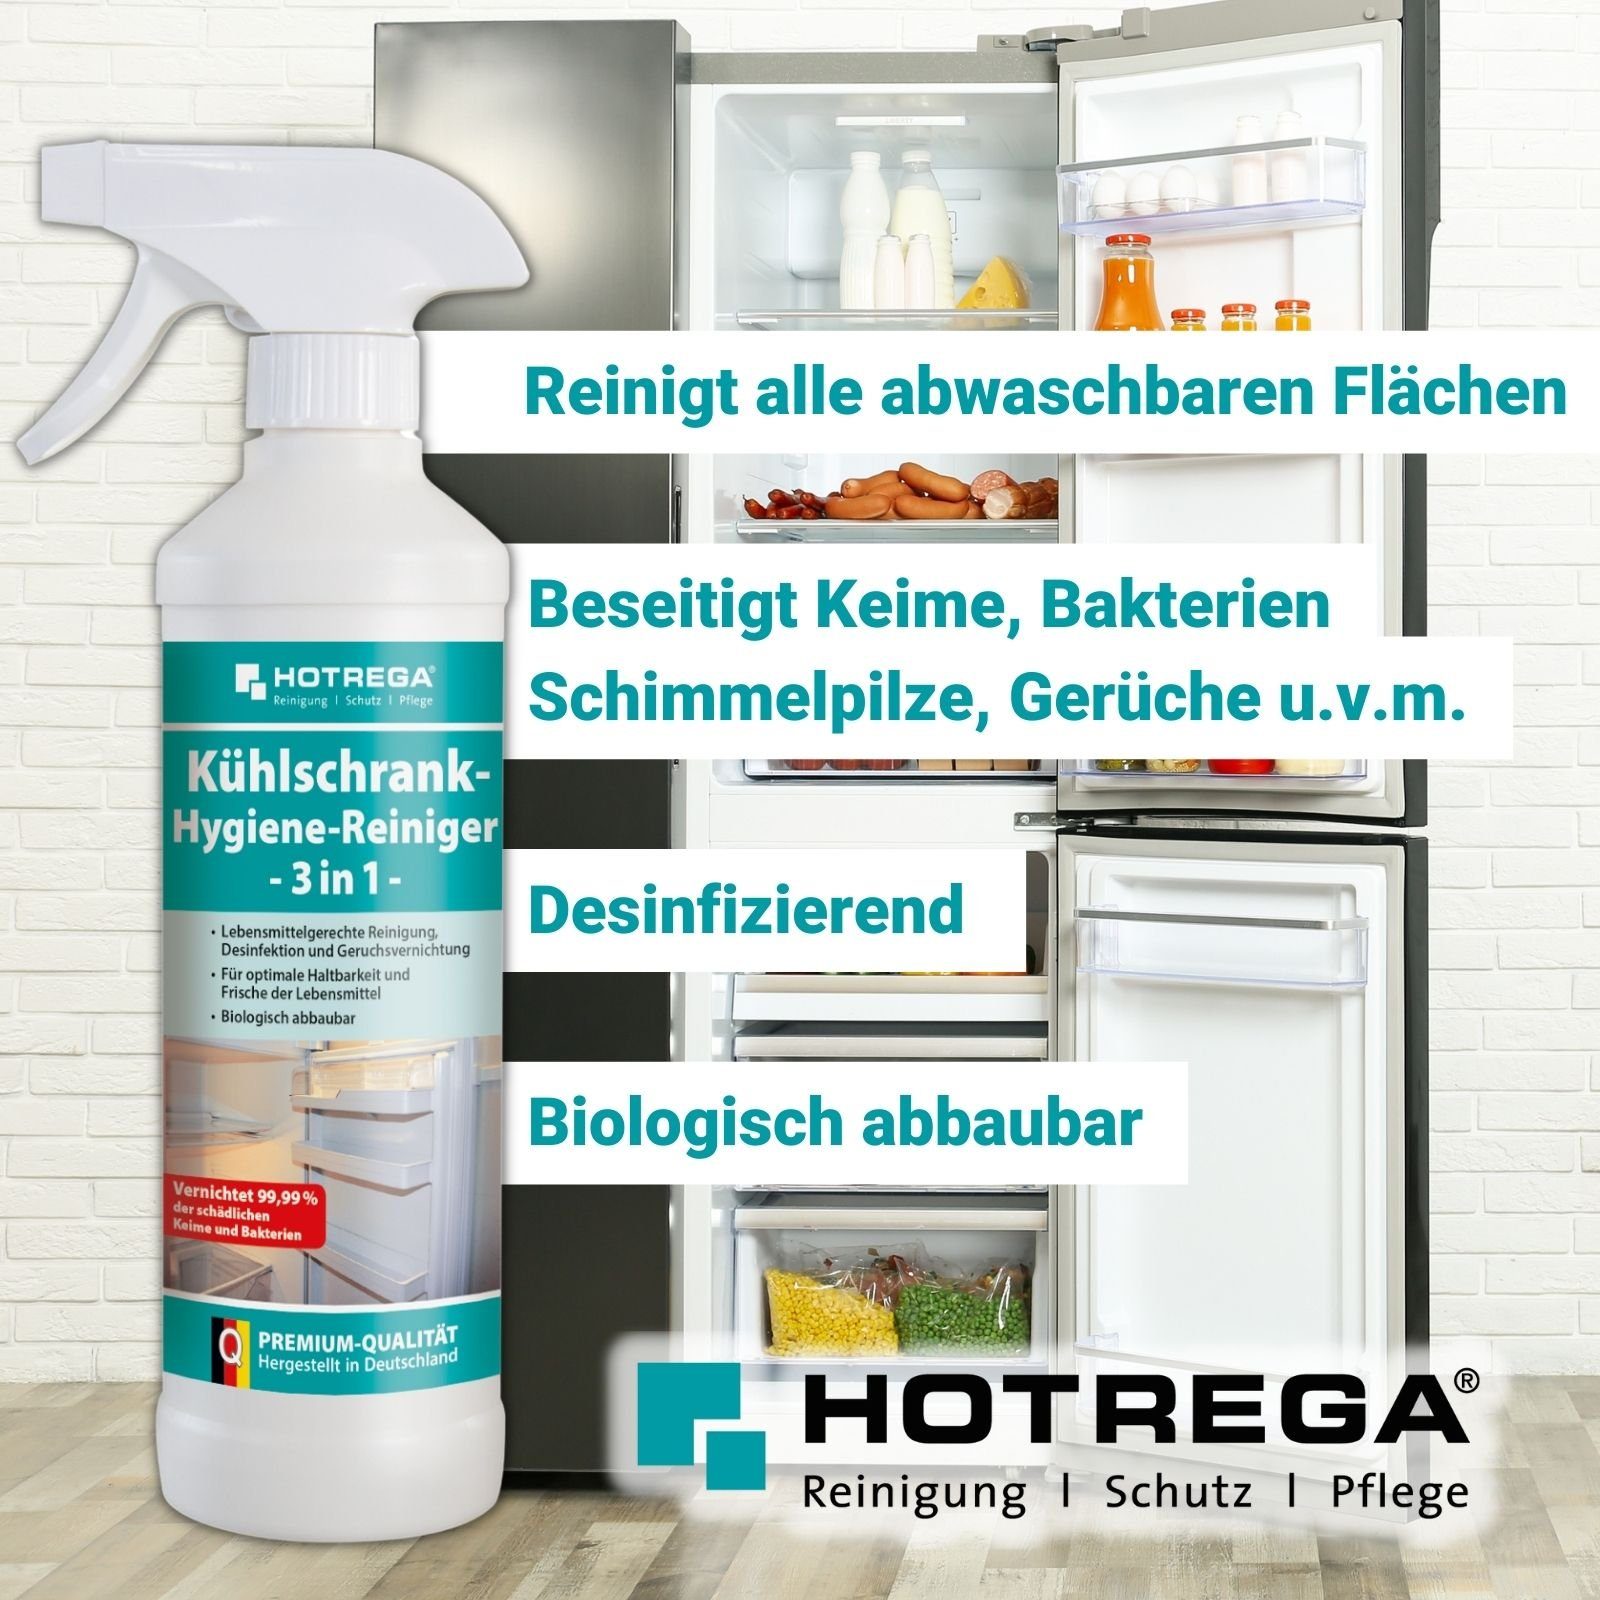 HOTREGA® Reiniger Hygiene 3in1 Kühlschrank Sets Küchenreiniger